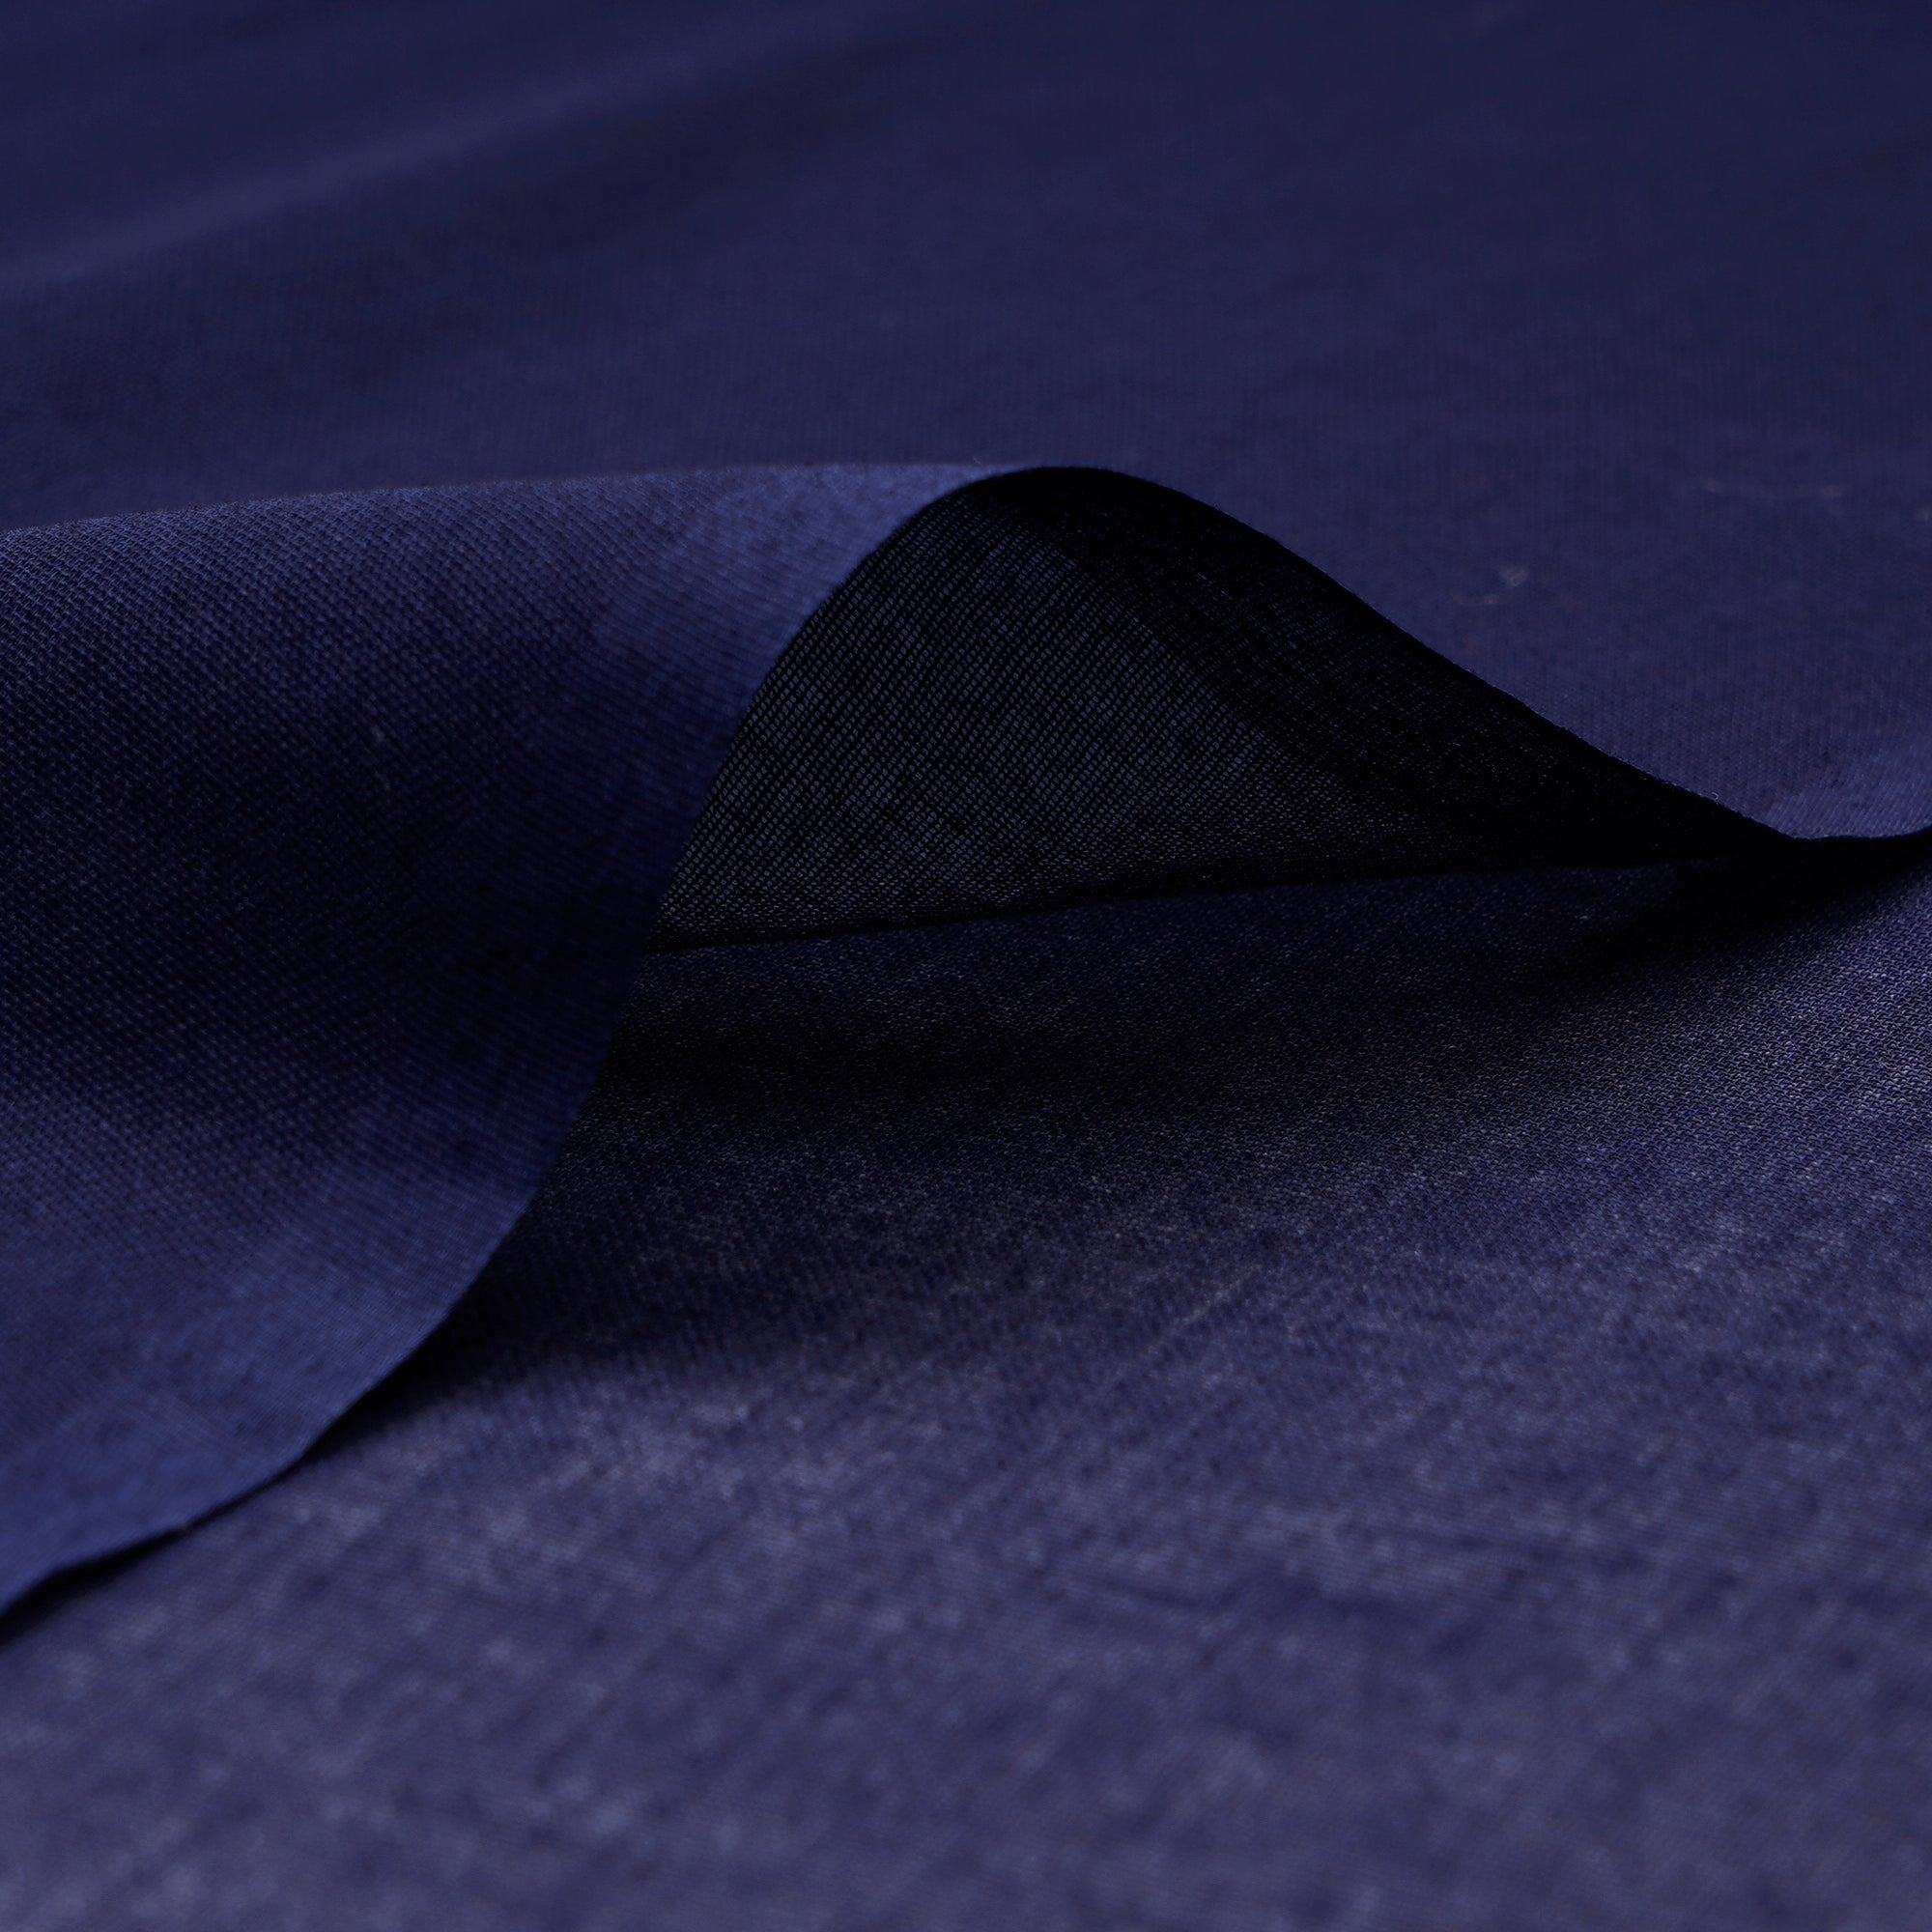 (Pre-Cut 2.00 Mtr) Navy Color Cotton Denim Fabric